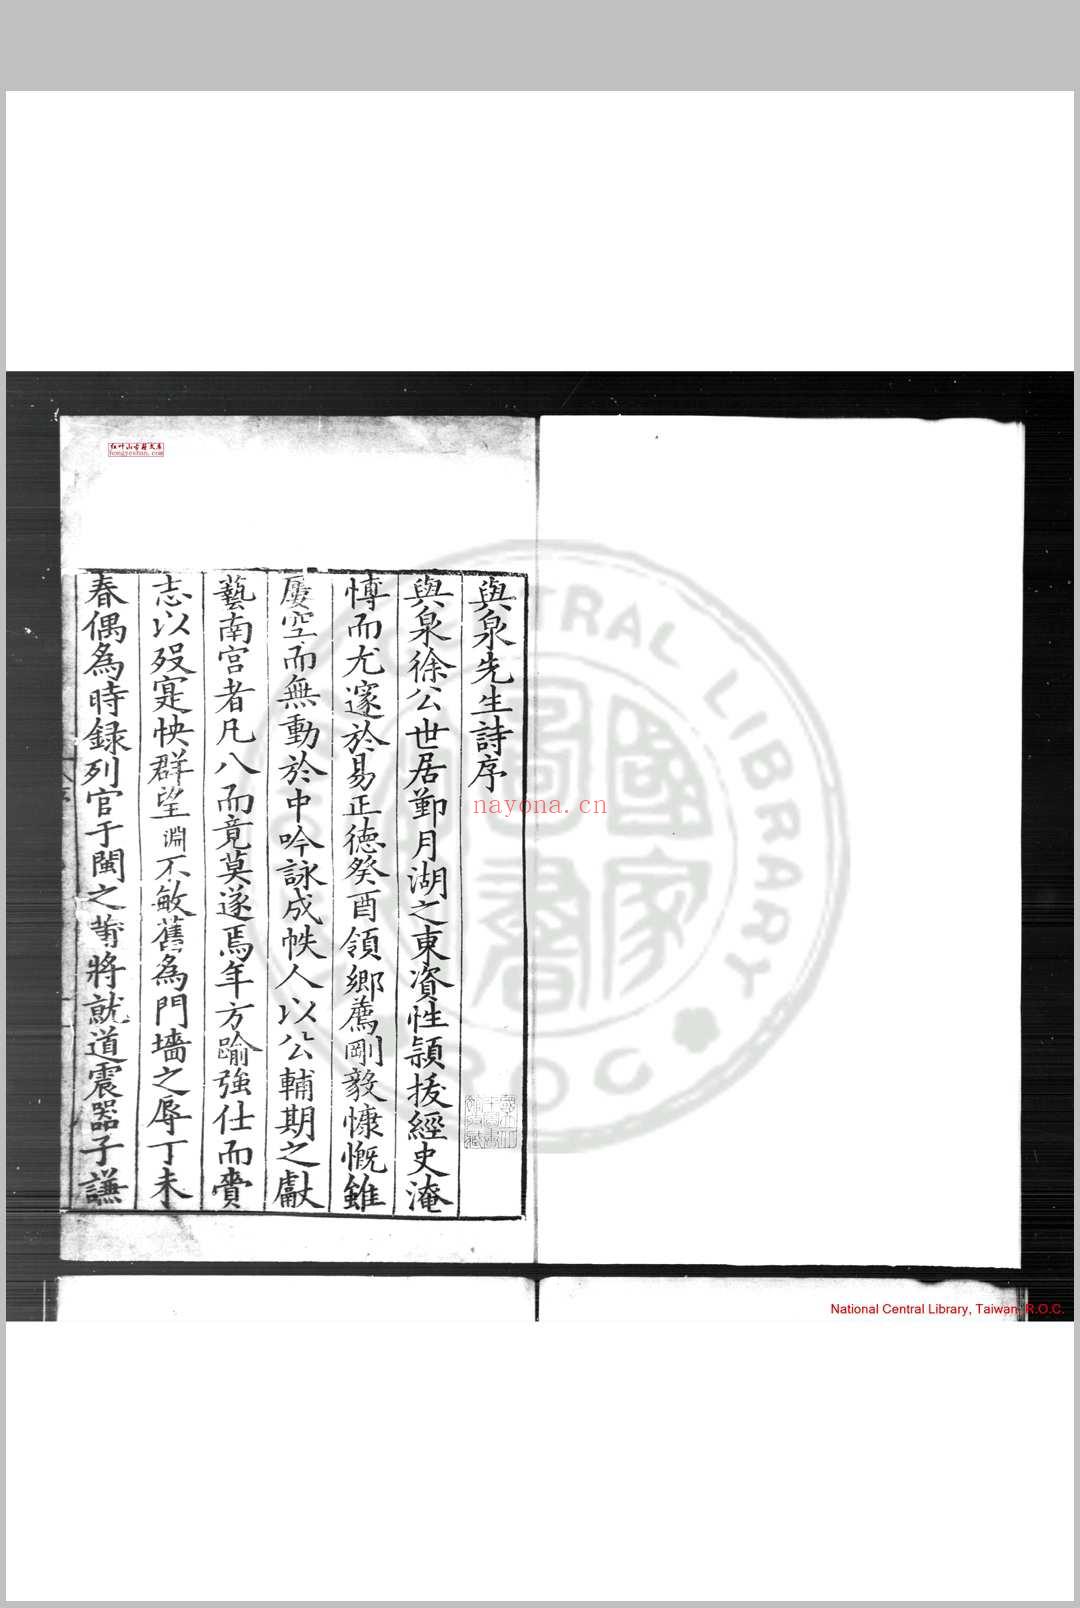 与泉先生集 (明)徐渐撰 明嘉靖庚戌(二十九年, 1550)刊本